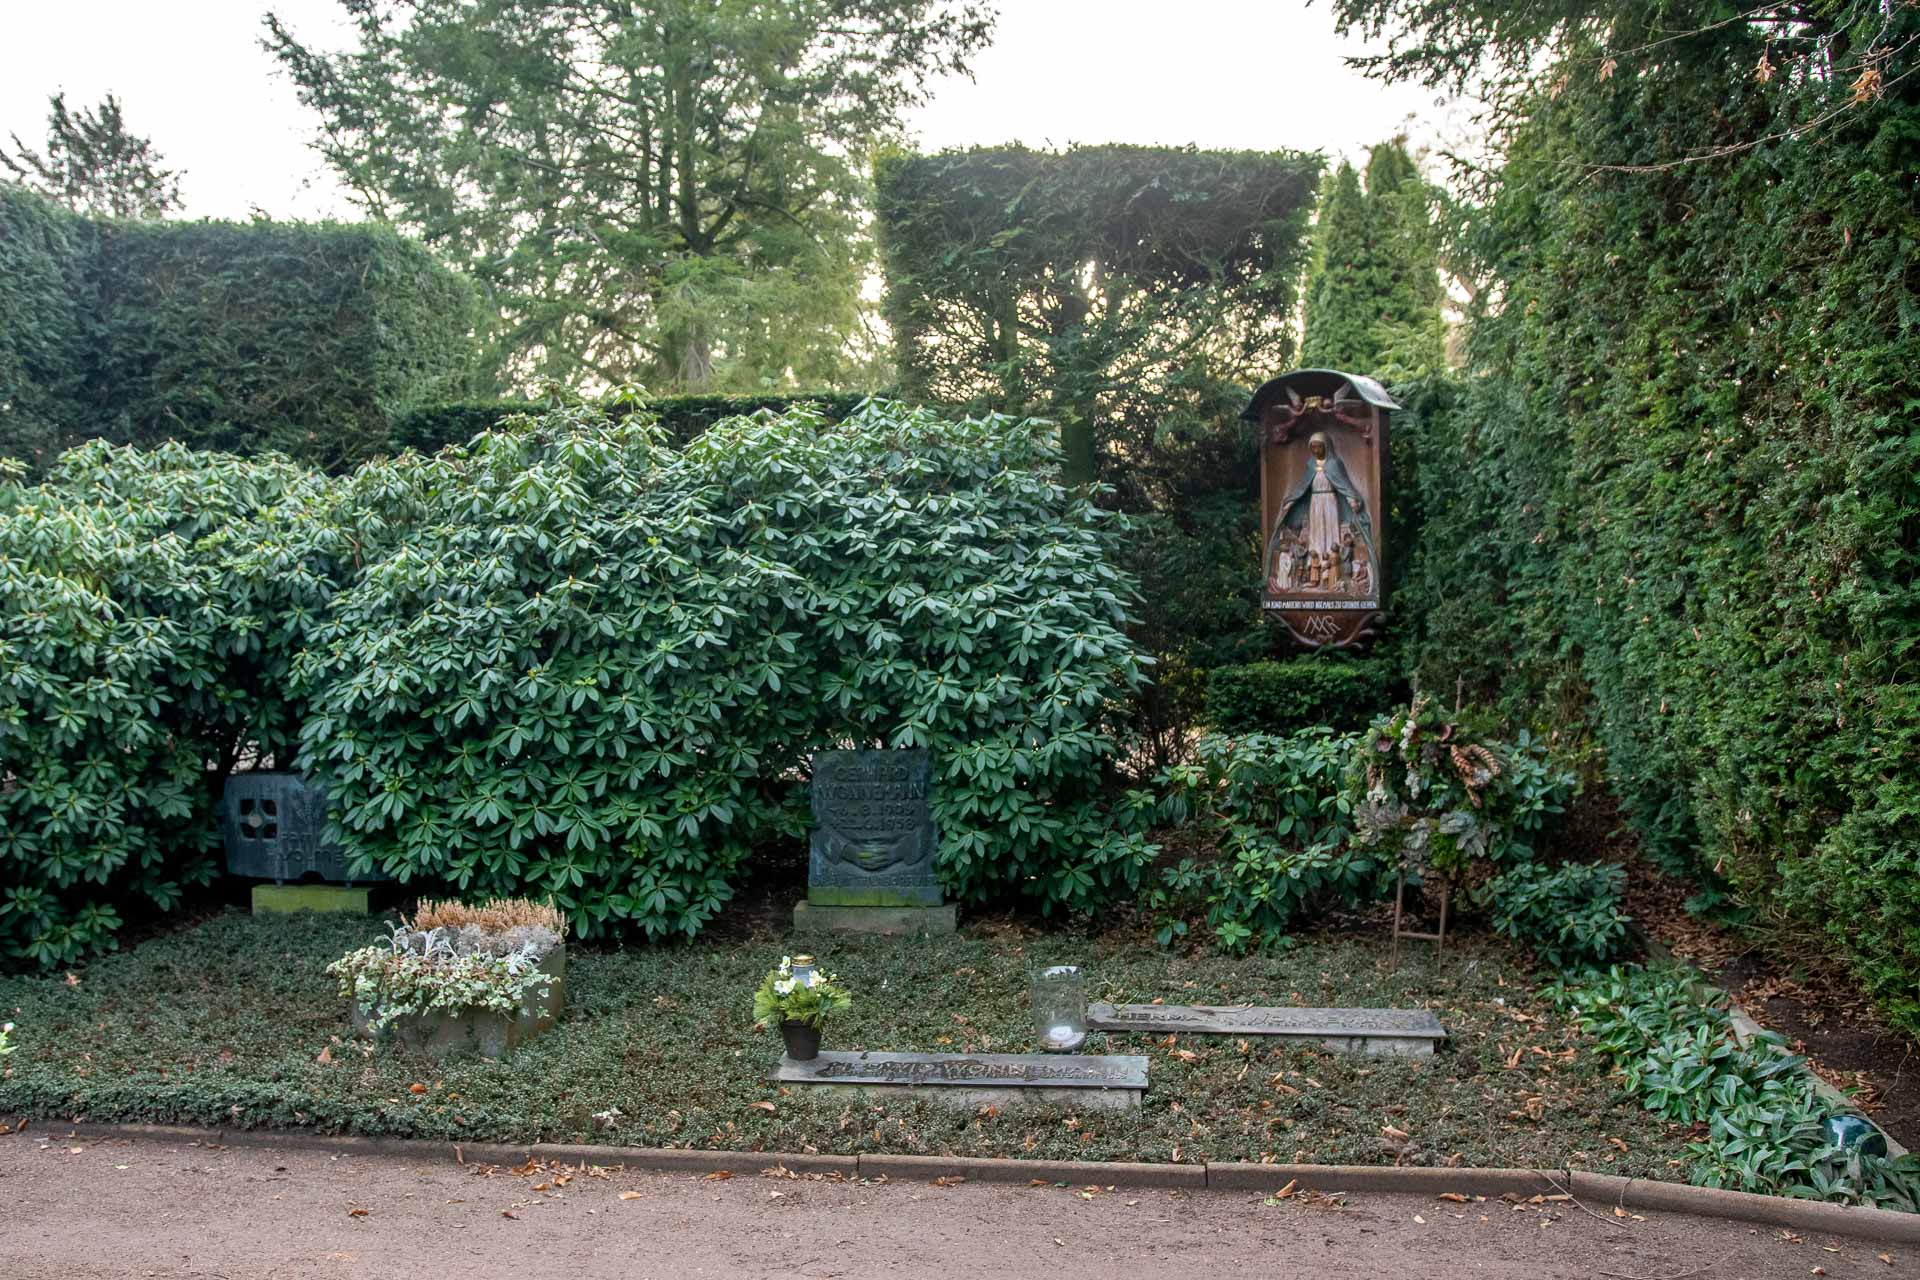 Grabmal der Familie Gerhard Wonnemann